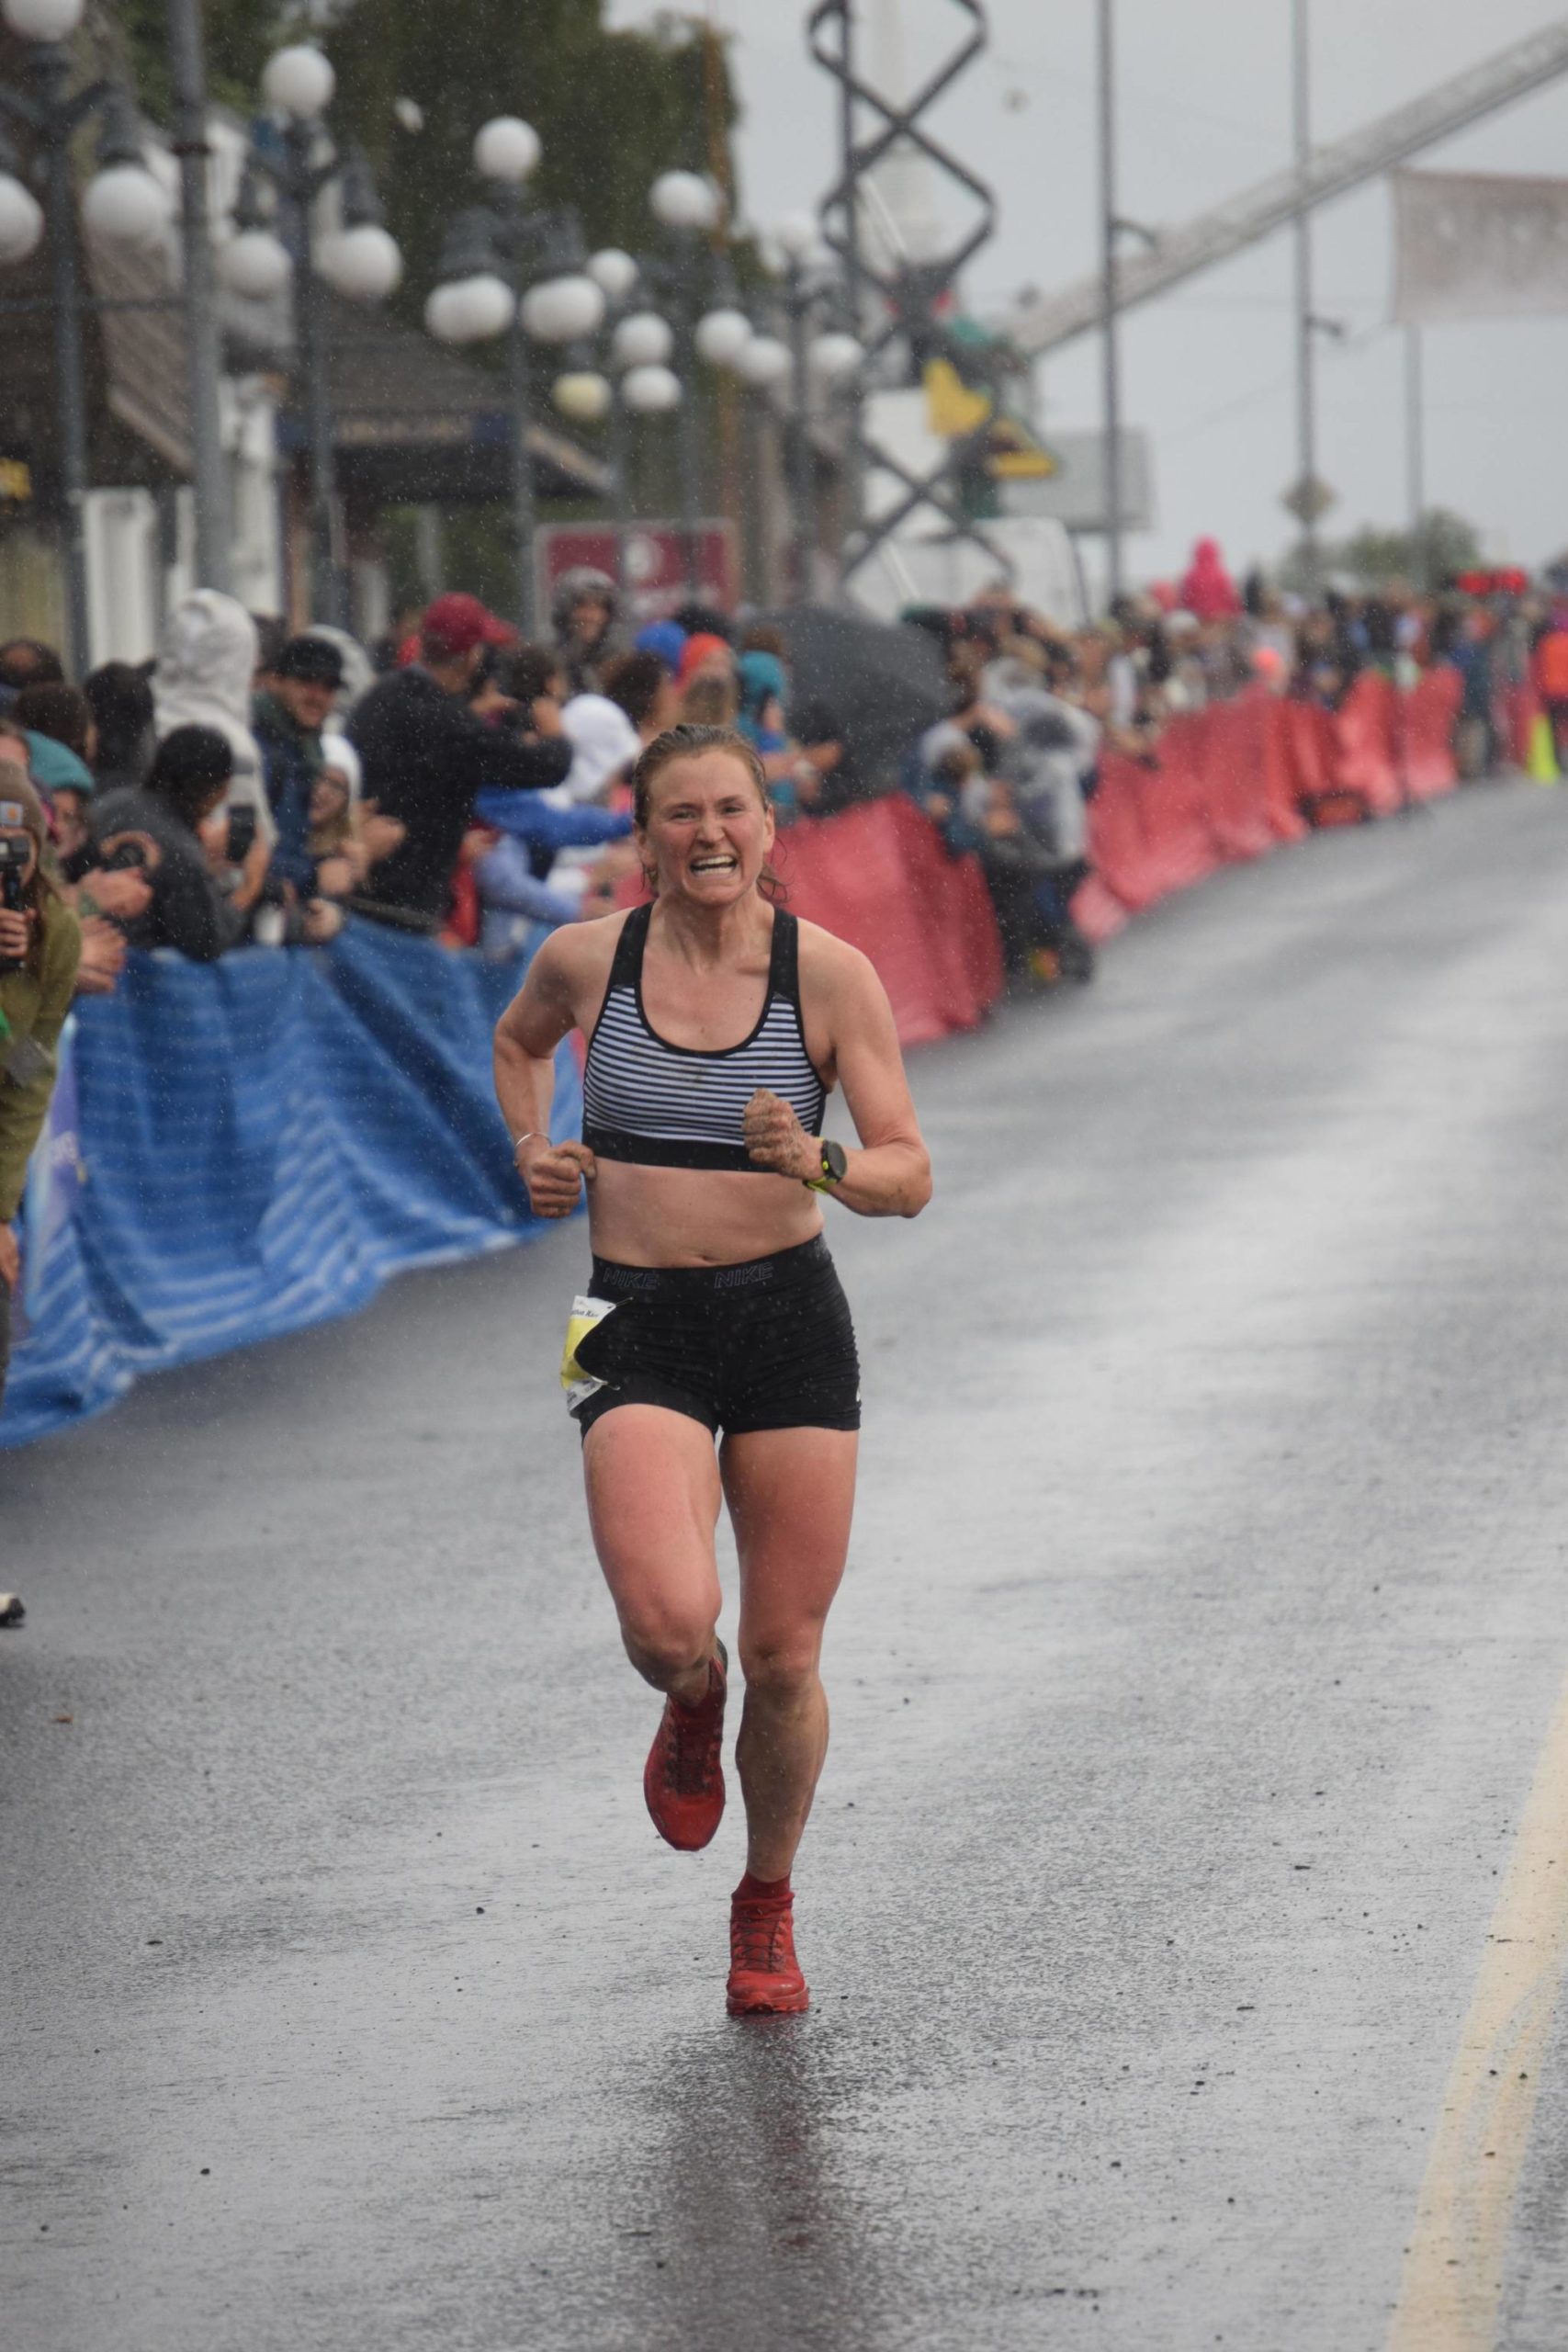 Hannah Lafleur, 32, of Seward defends her title in the women’s Mount Marathon Race in Seward, Alaska, on Wednesday, July 7, 2021. (Photo by Jeff Helminiak/Peninsula Clarion)